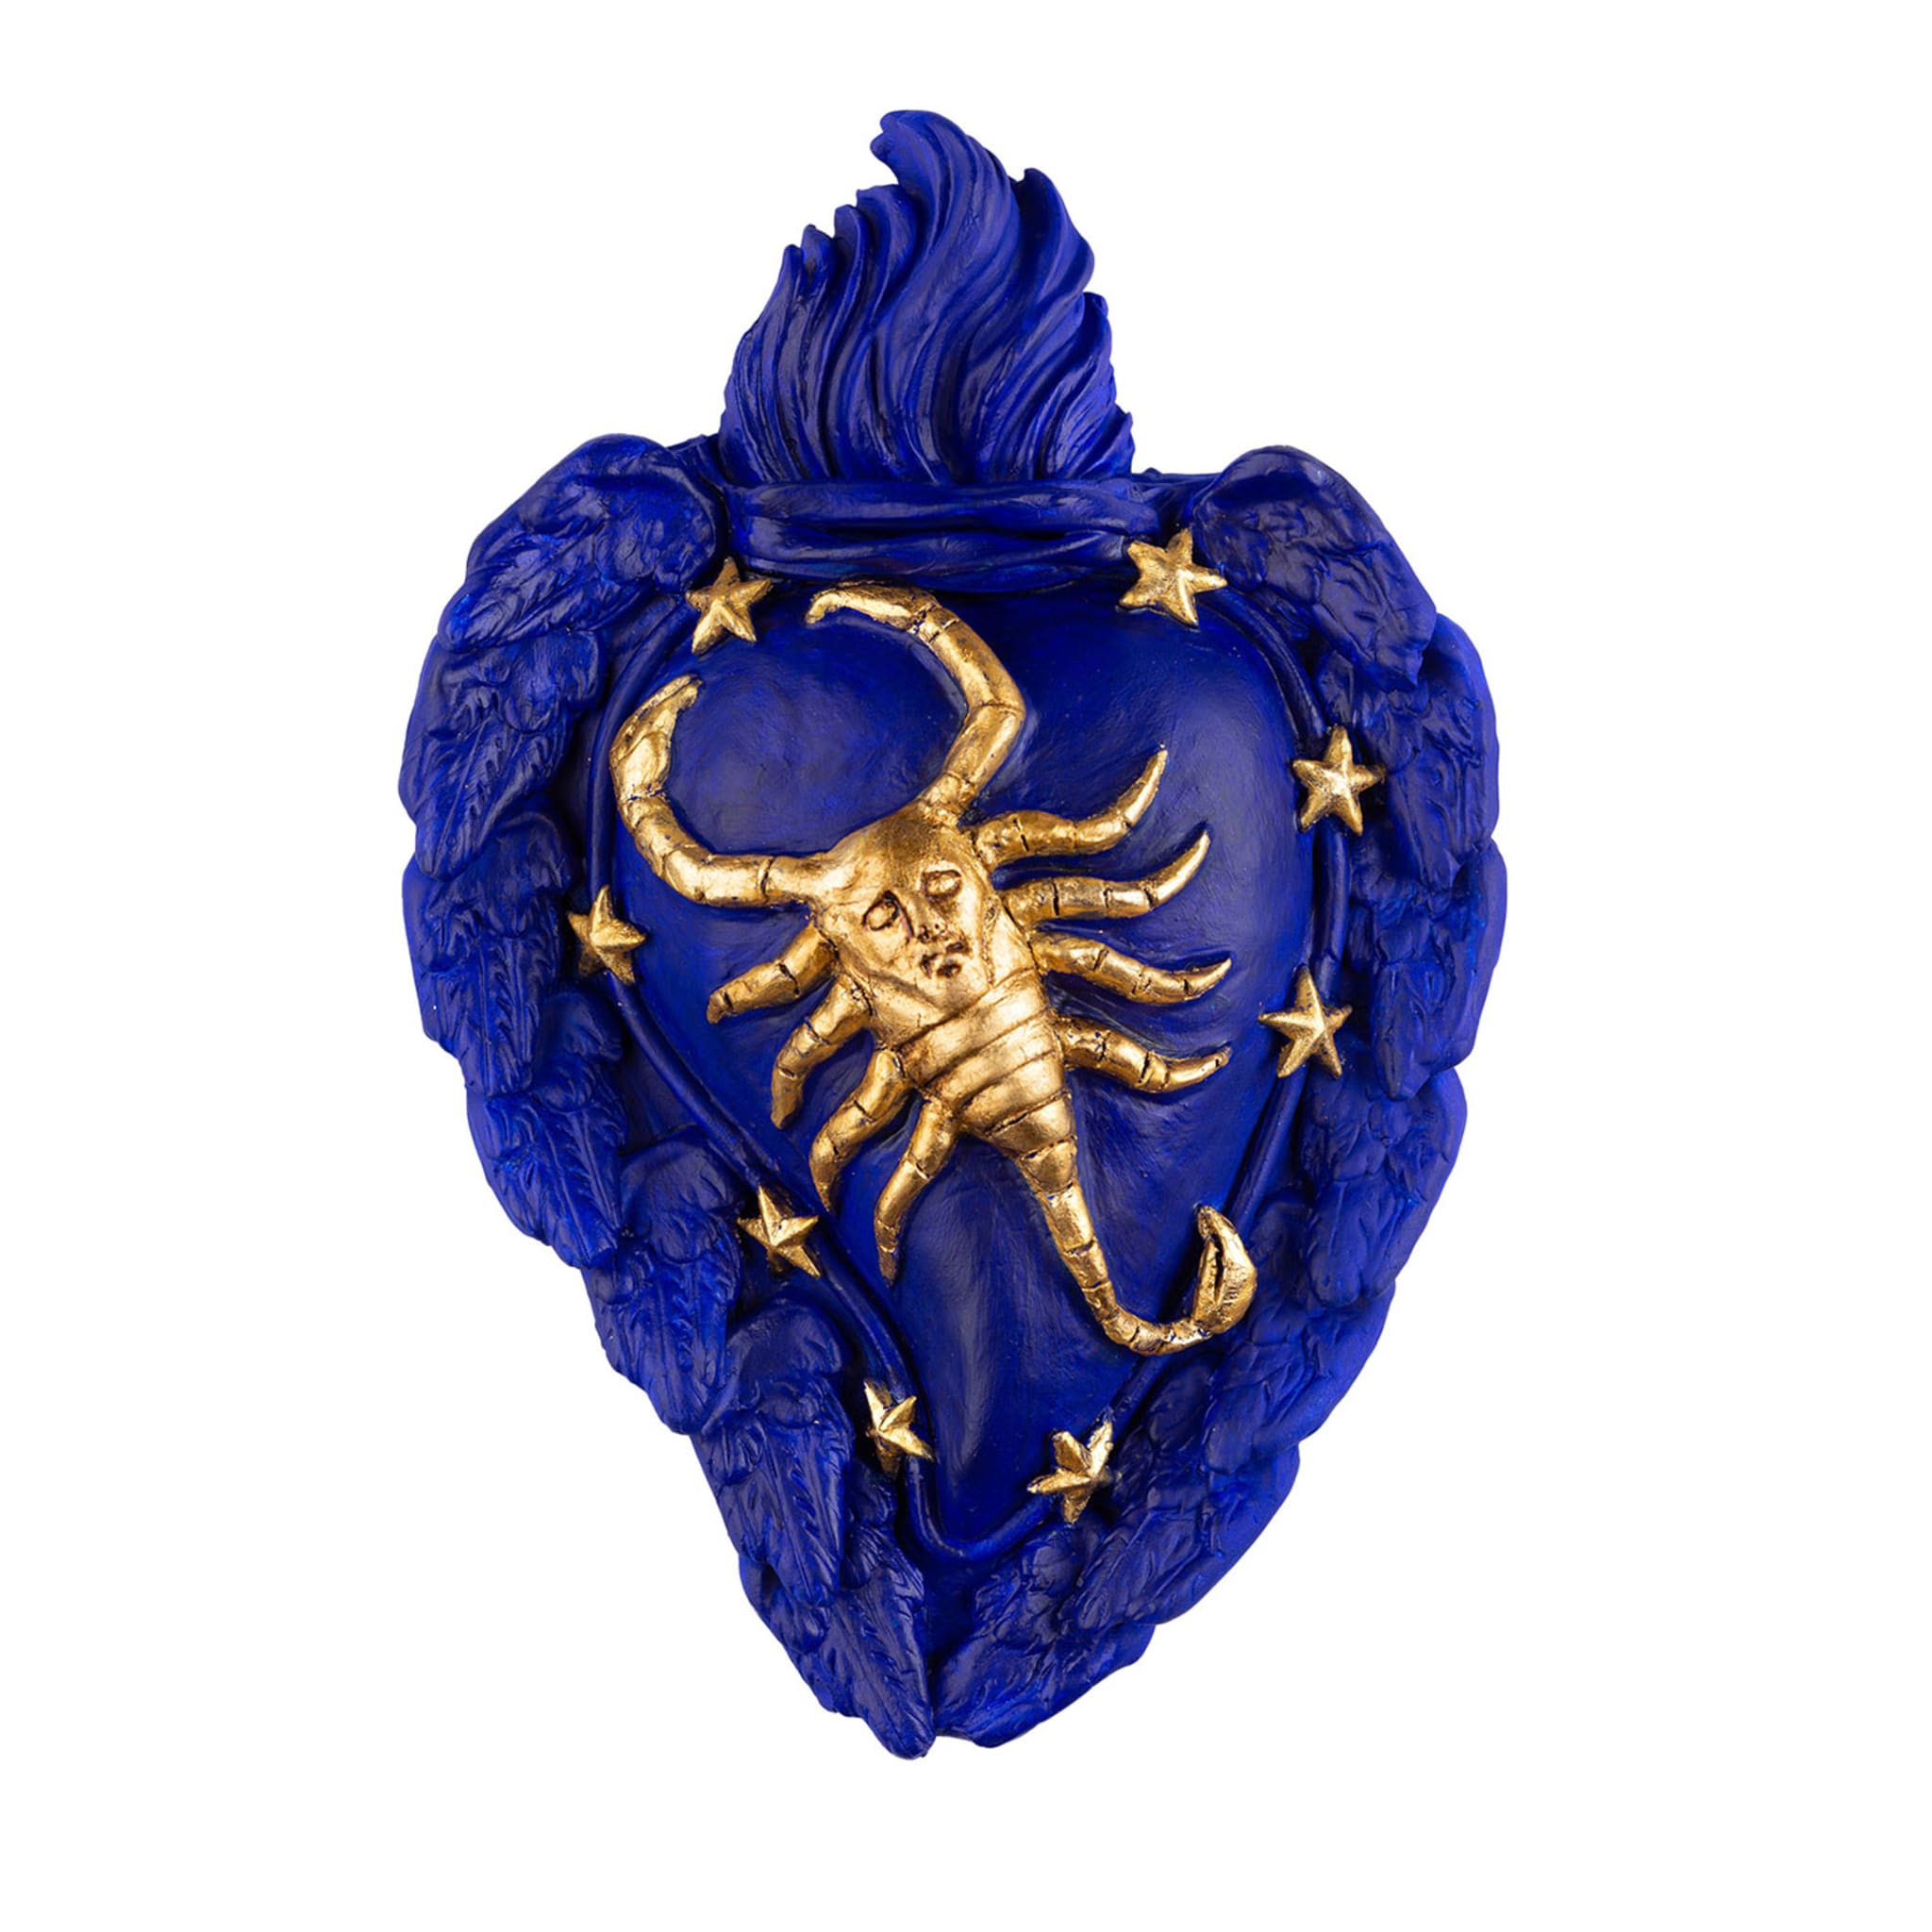 Zodiaco Scorpio Ceramic Heart - Vue principale